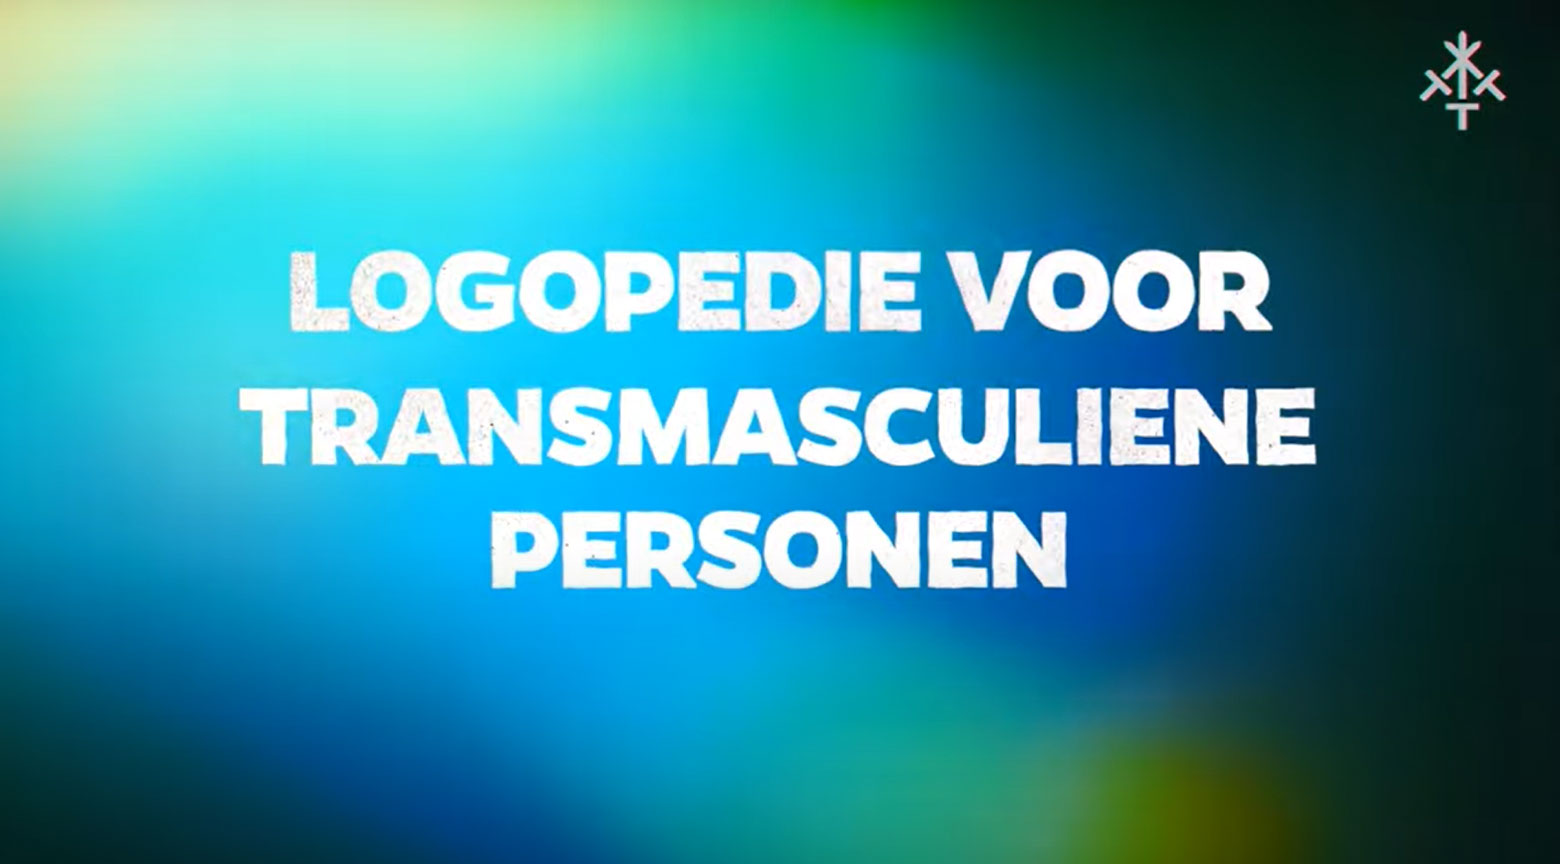 Plaatjes met de tekst; logopedie voor transmasculiene personen